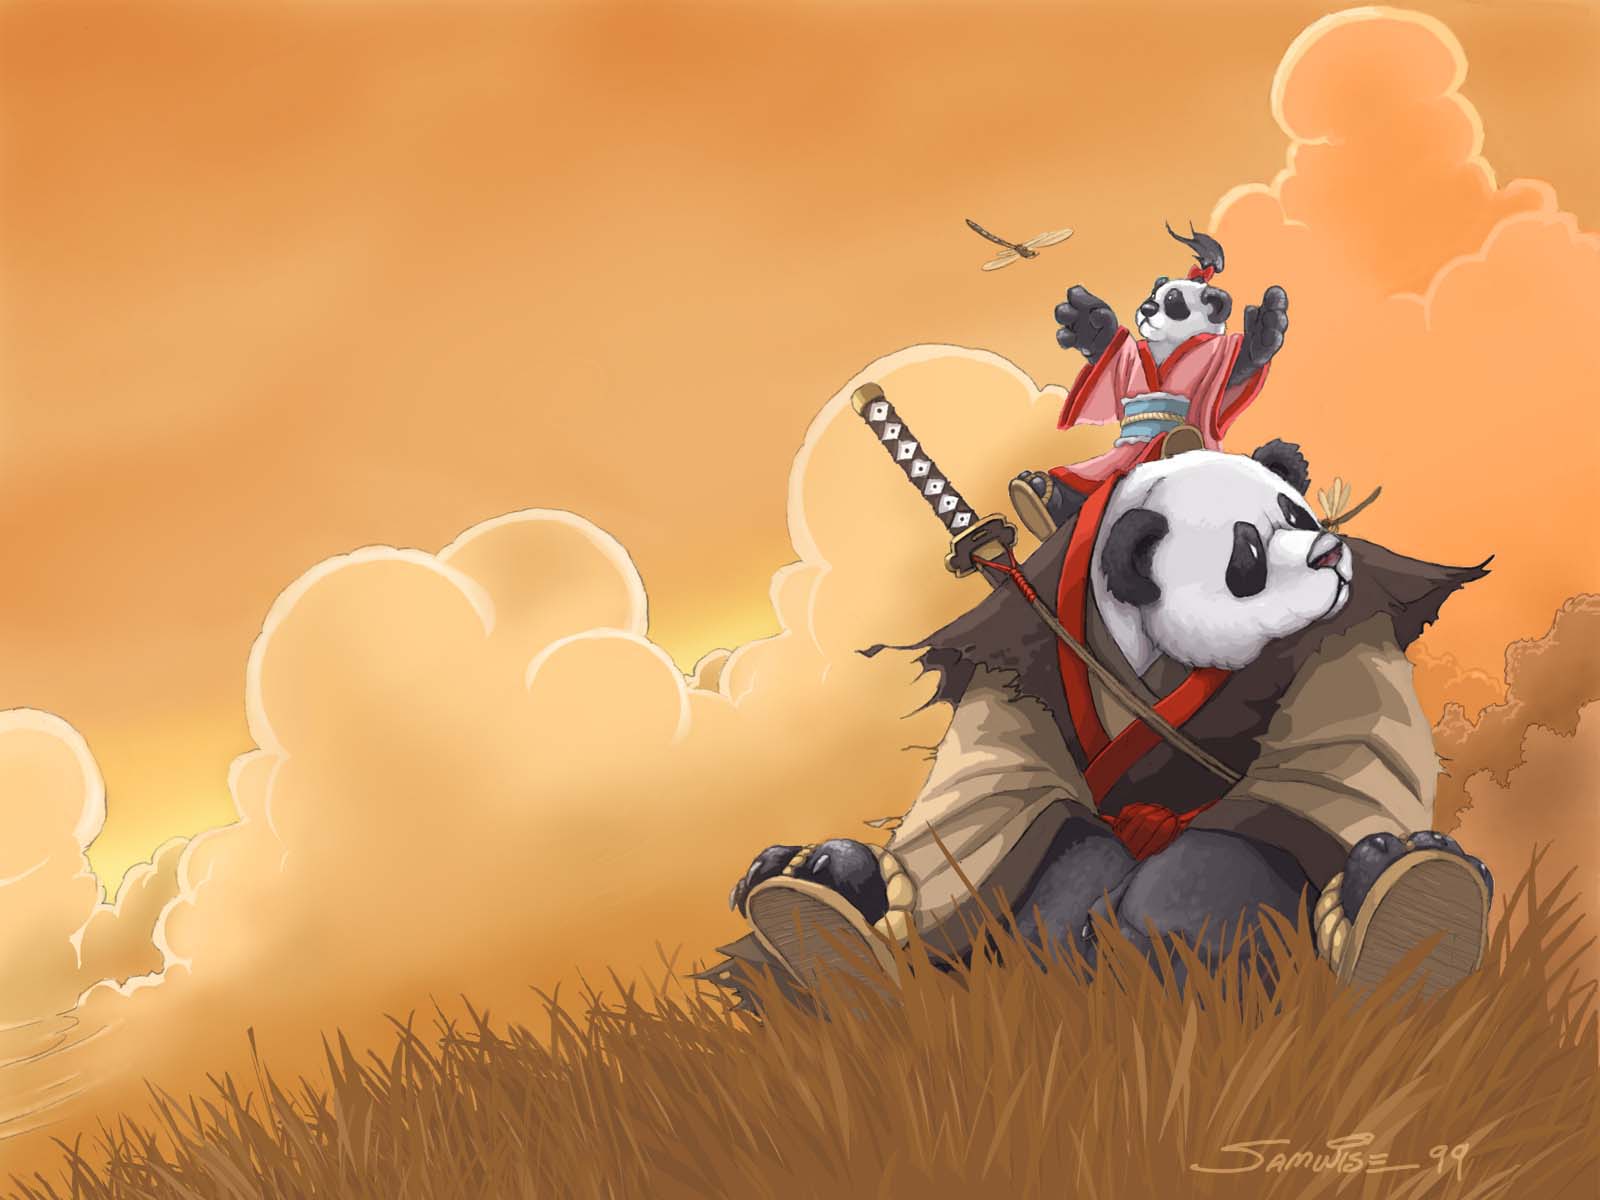 HD desktop wallpaper featuring a panda.